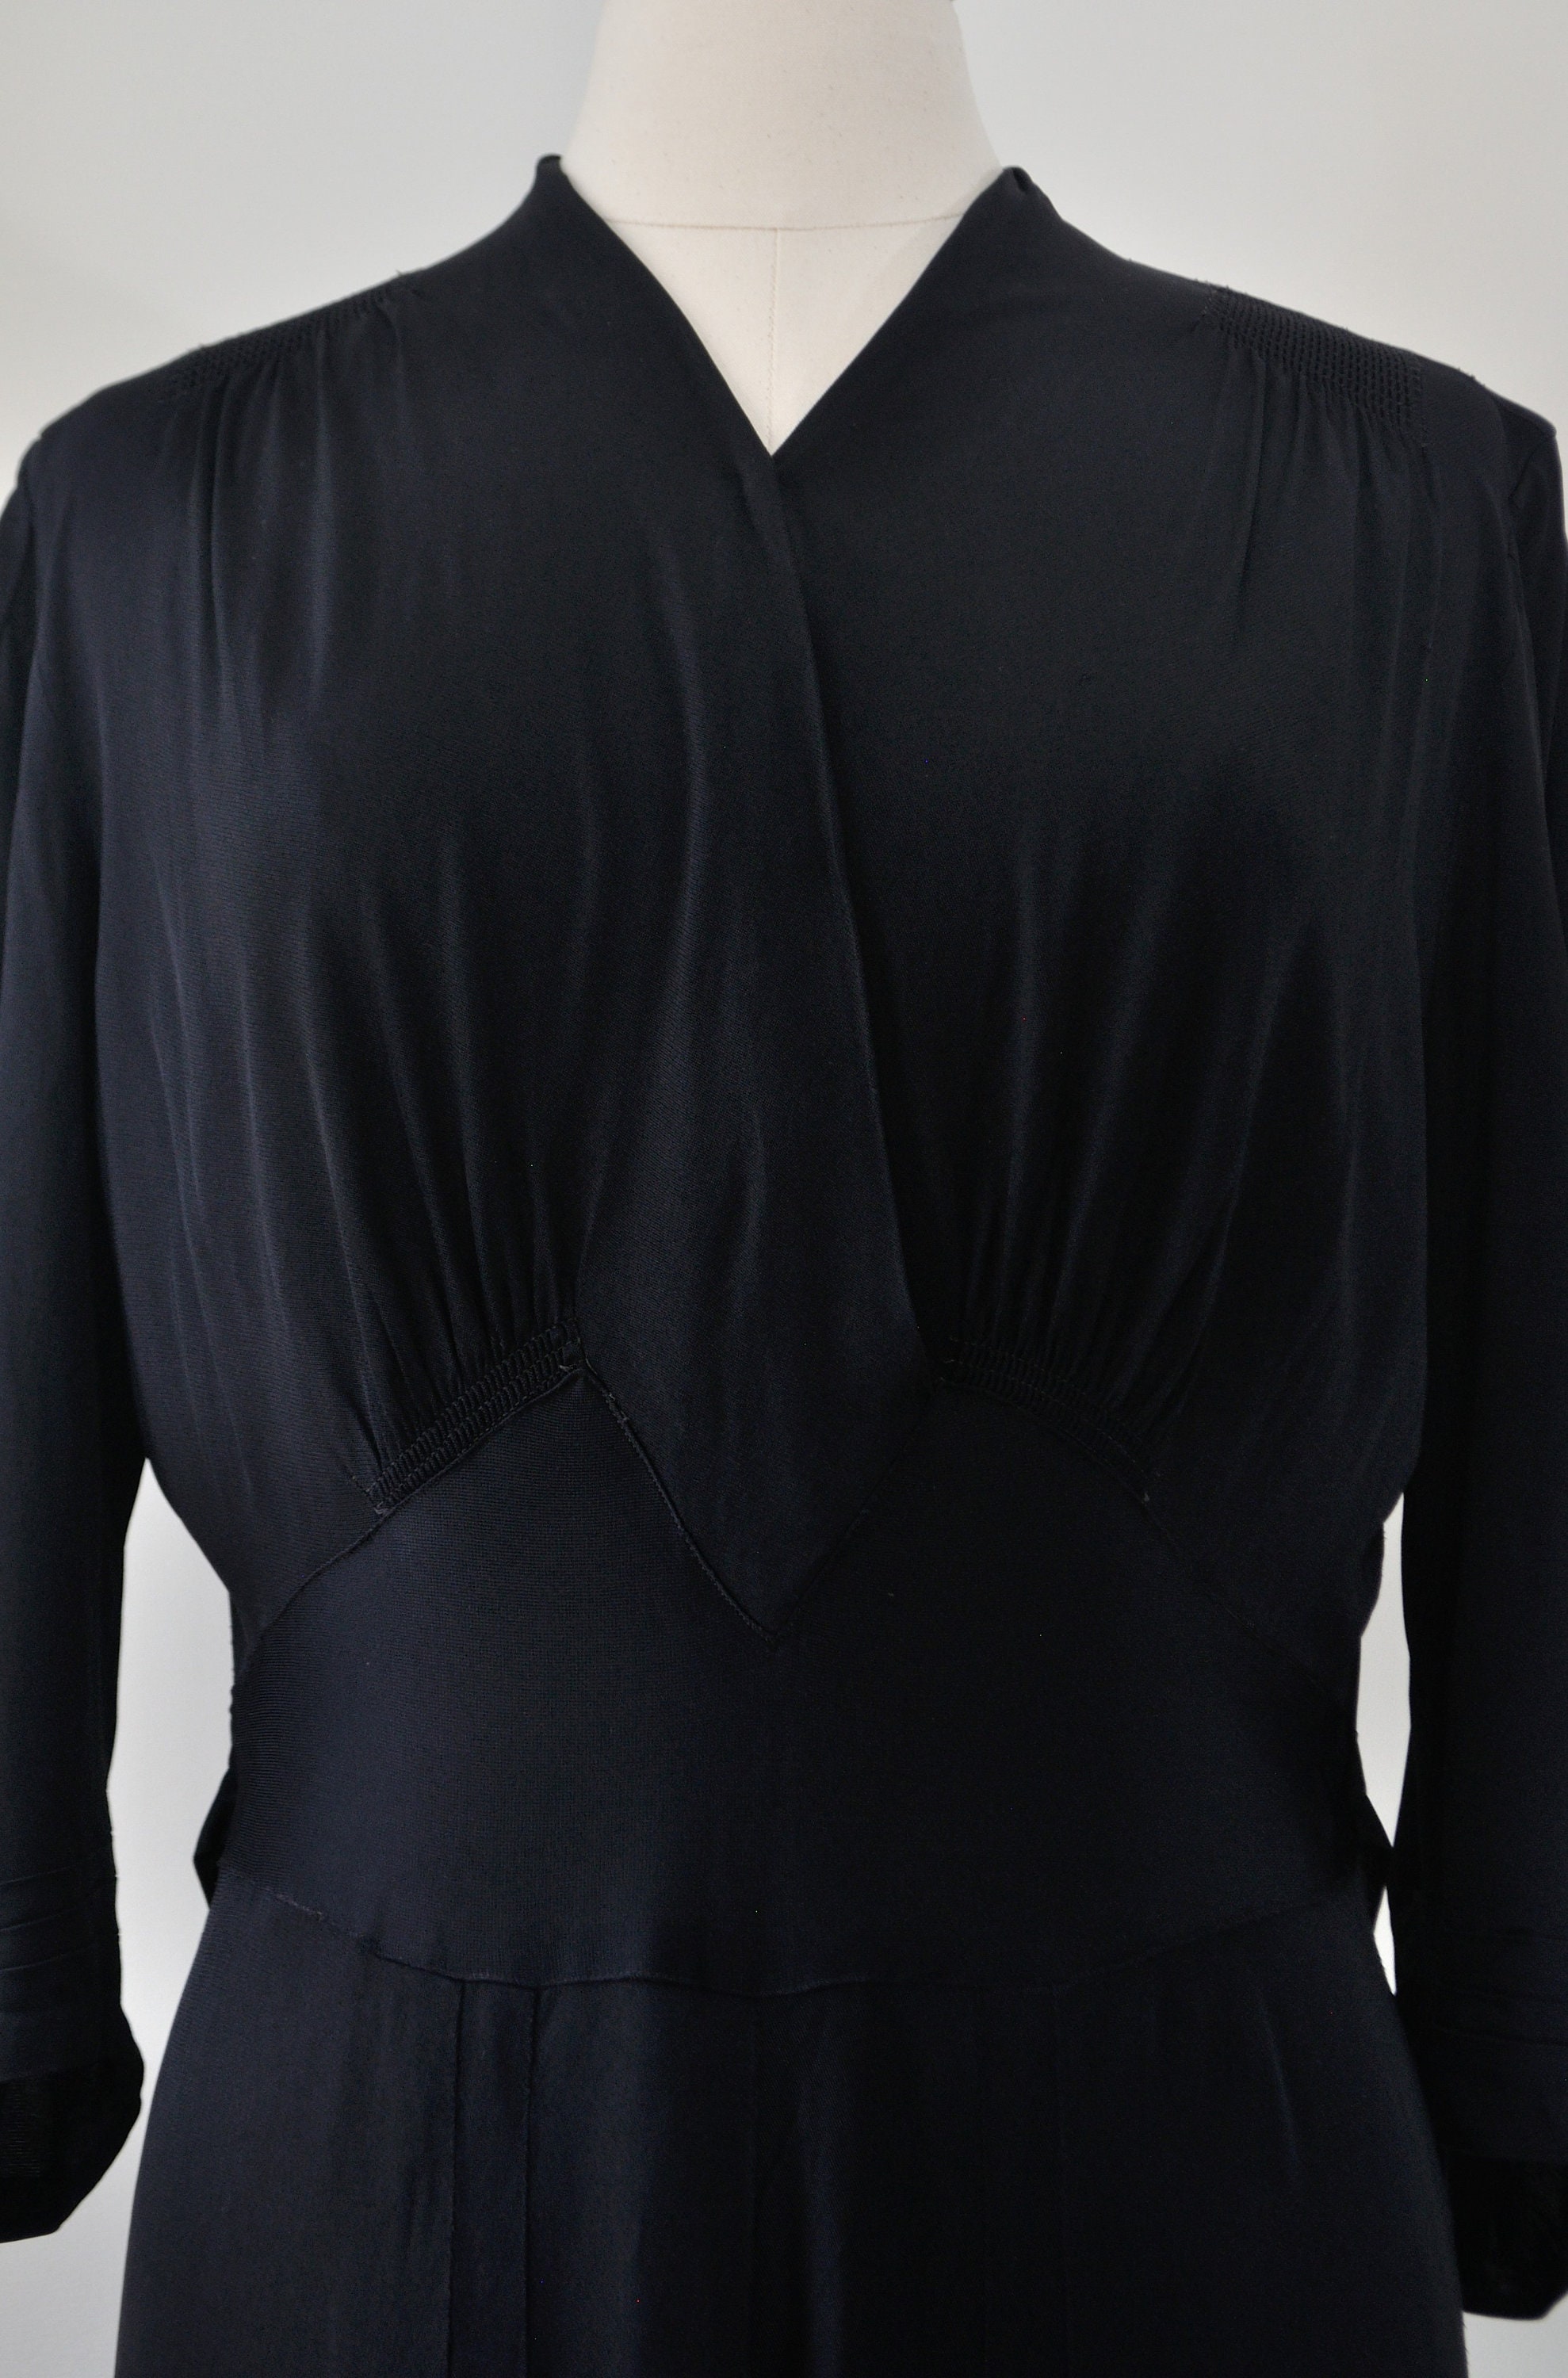 40s Black Dress / Vintage 1930s 1940s Rayon Jersey Knit - Etsy